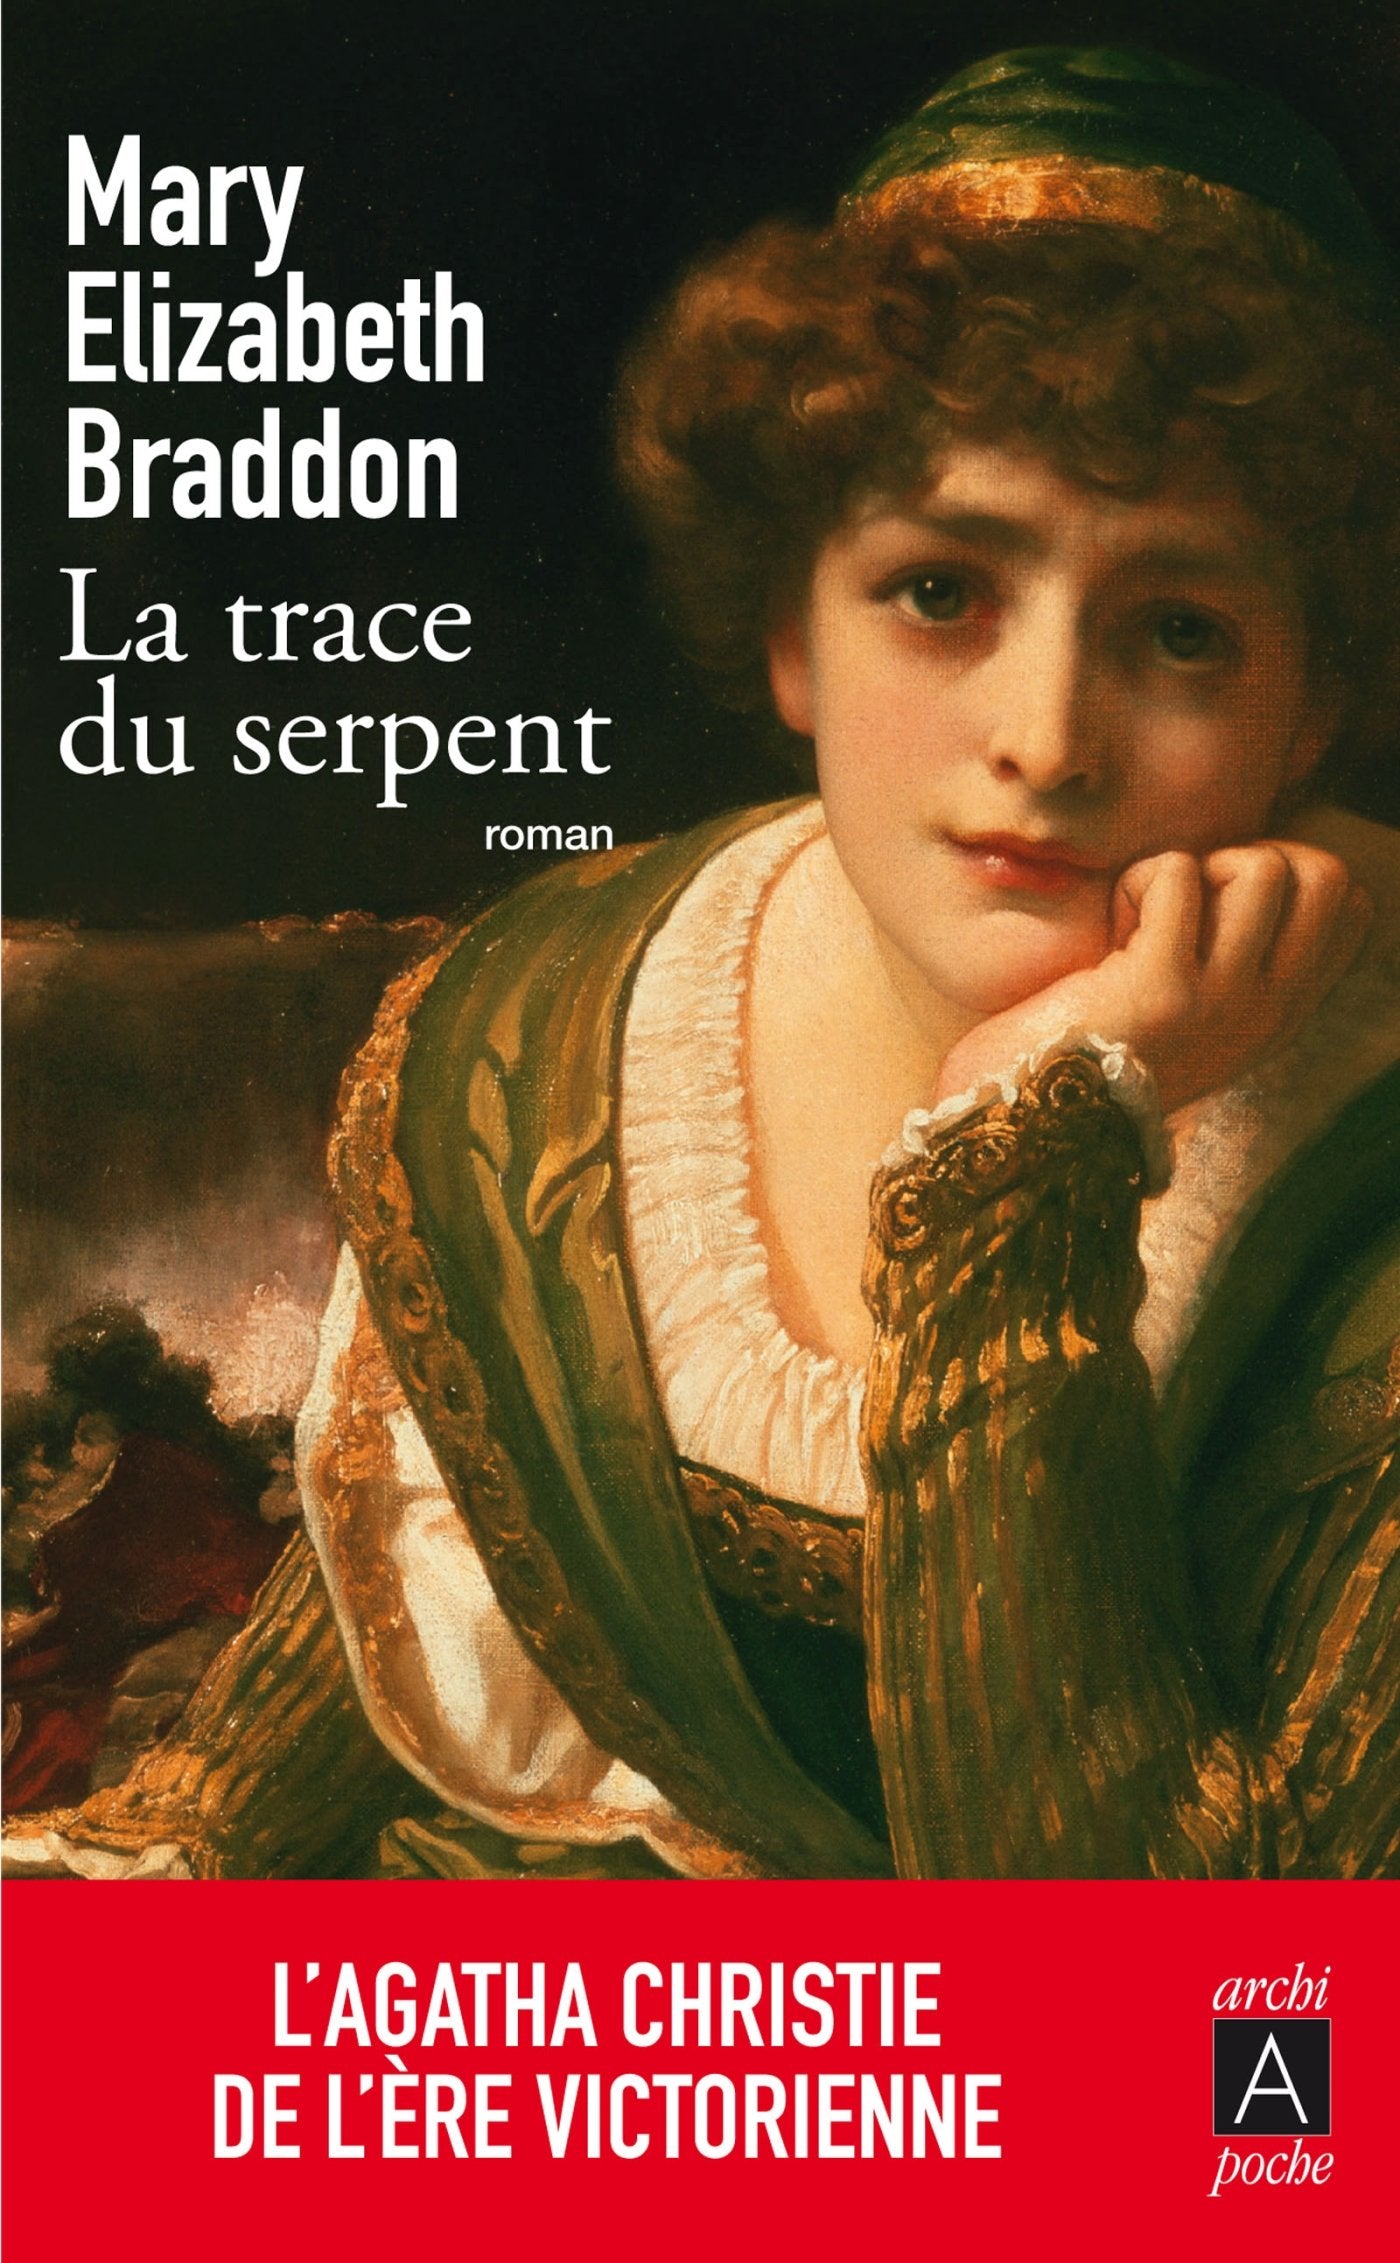 Livre ISBN 2352873452 La trace du serpent (Mary Elizabeth Braddon)